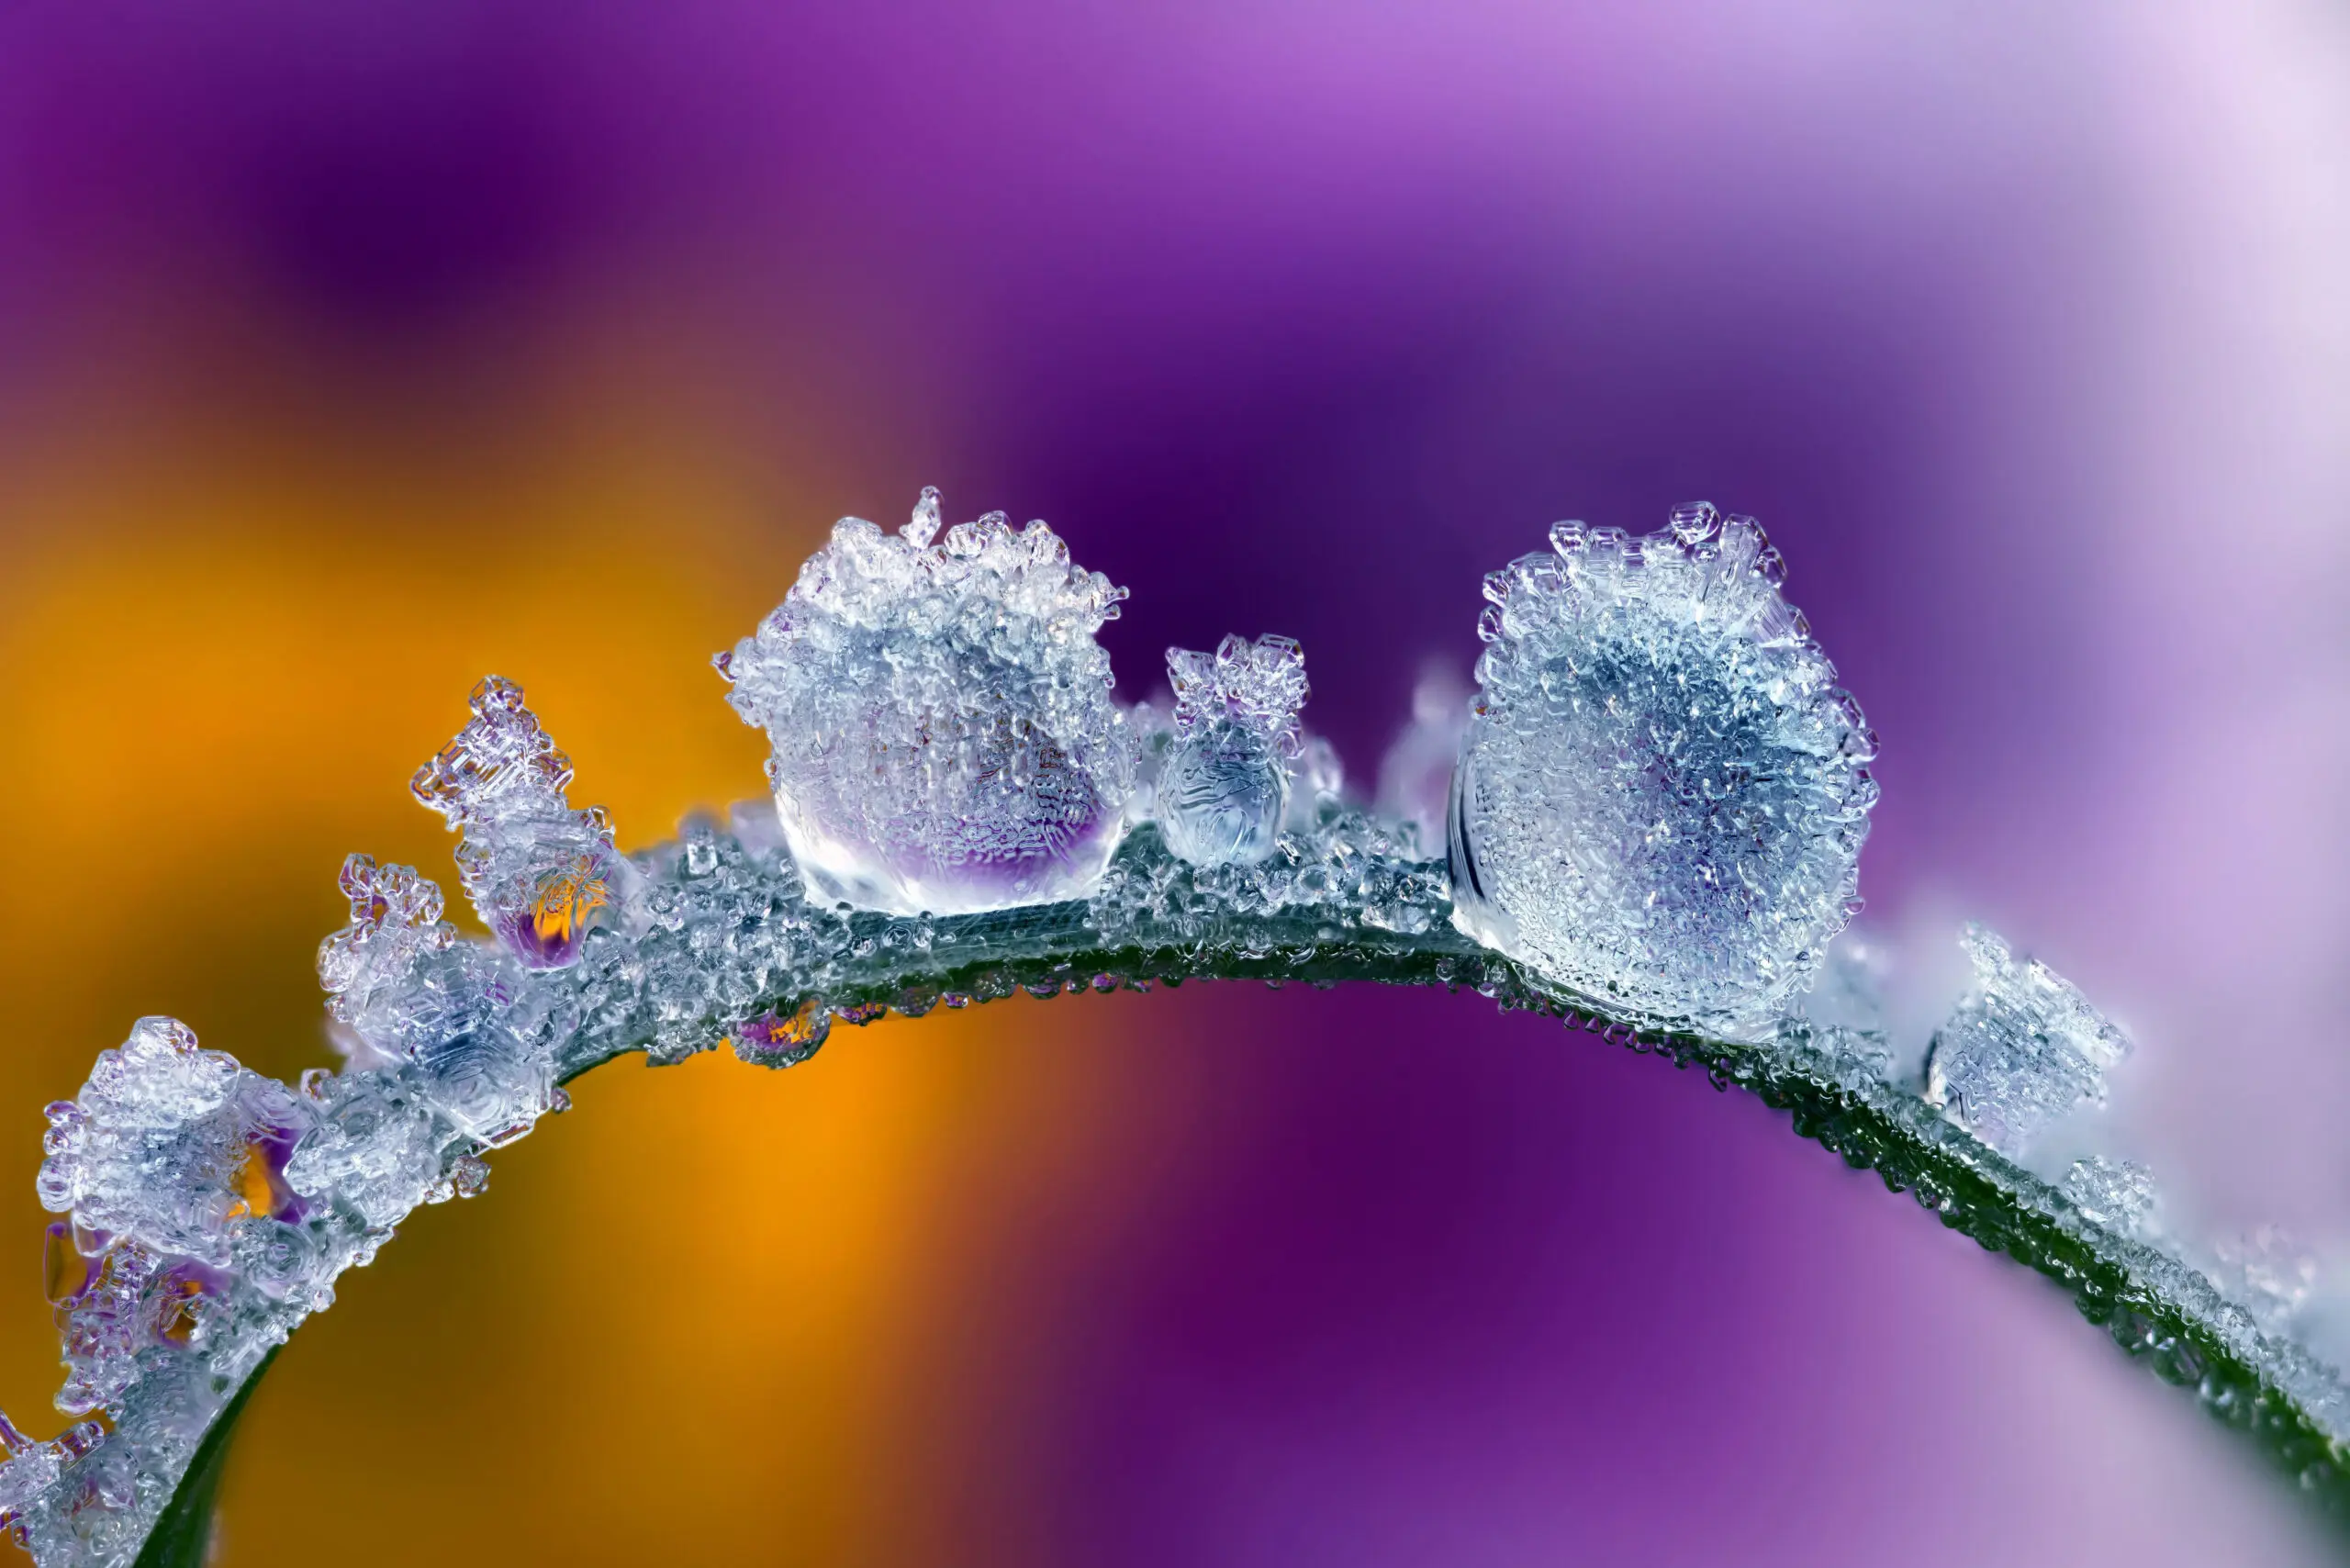 Wandbild (5444) Frozen by picture alliance / MAXPPP präsentiert: Details und Strukturen,Natur,Pflanzen